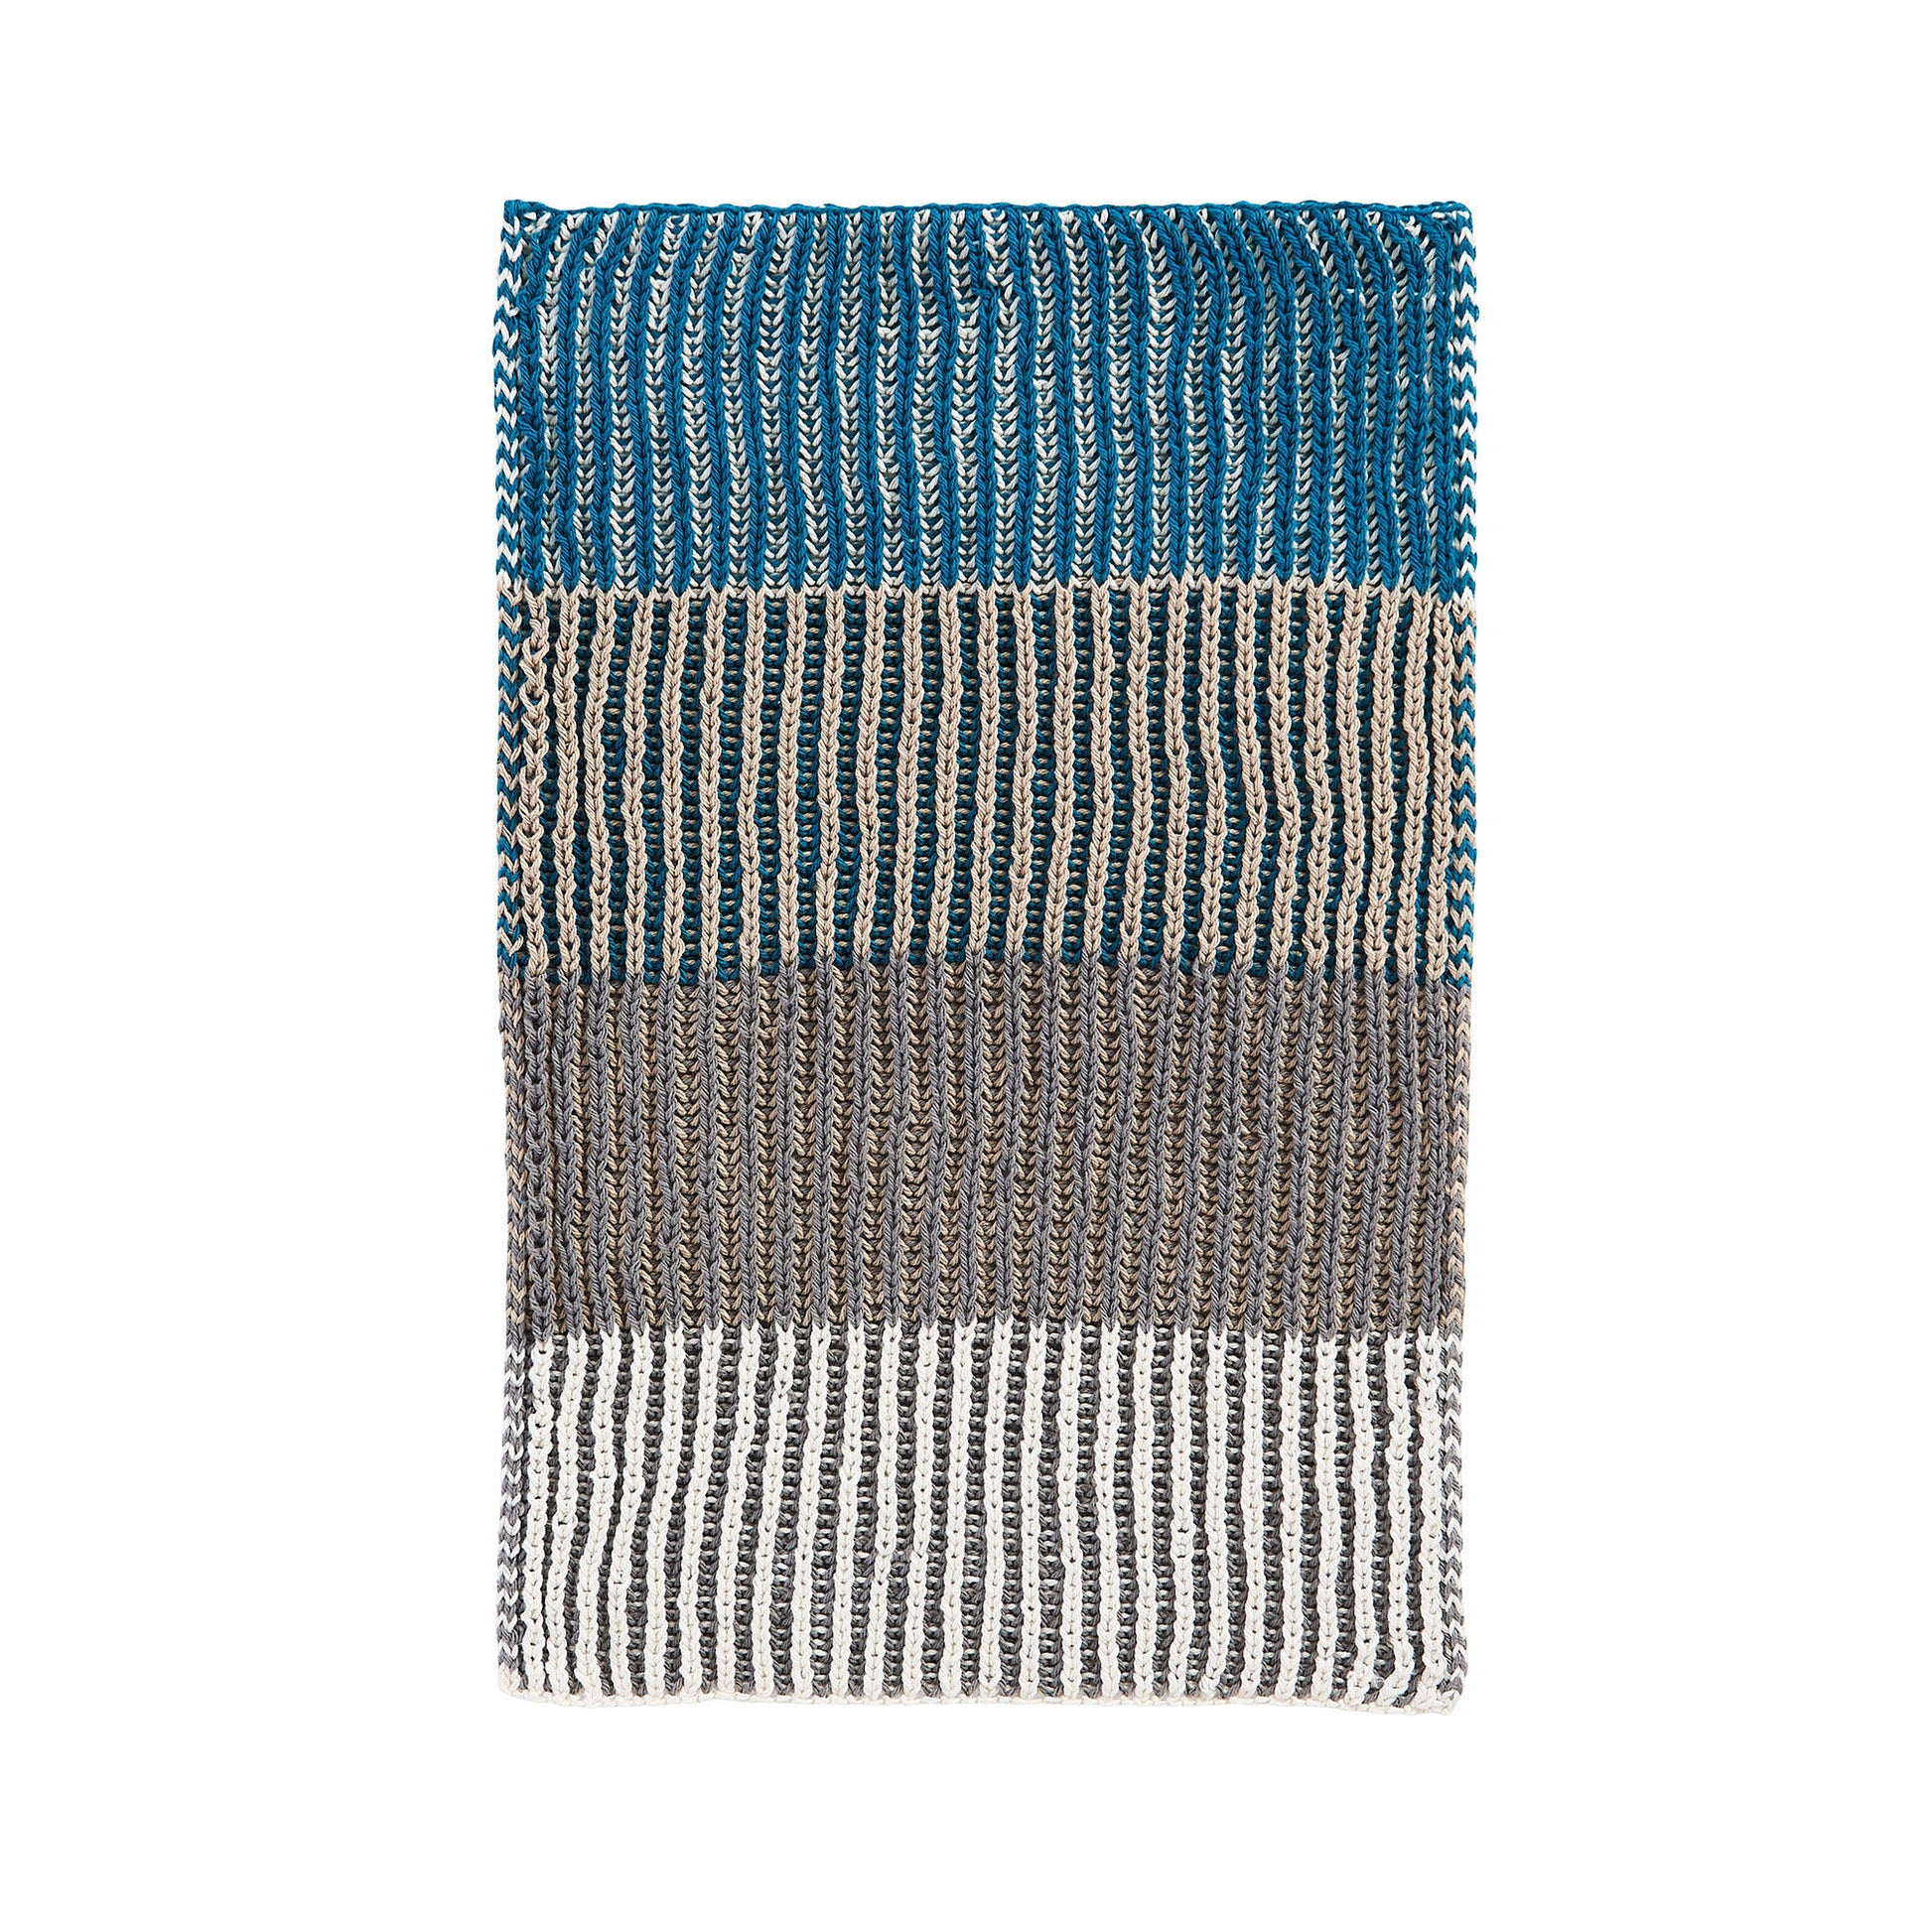 Free Lily Brioche Knit Tea Towel Pattern